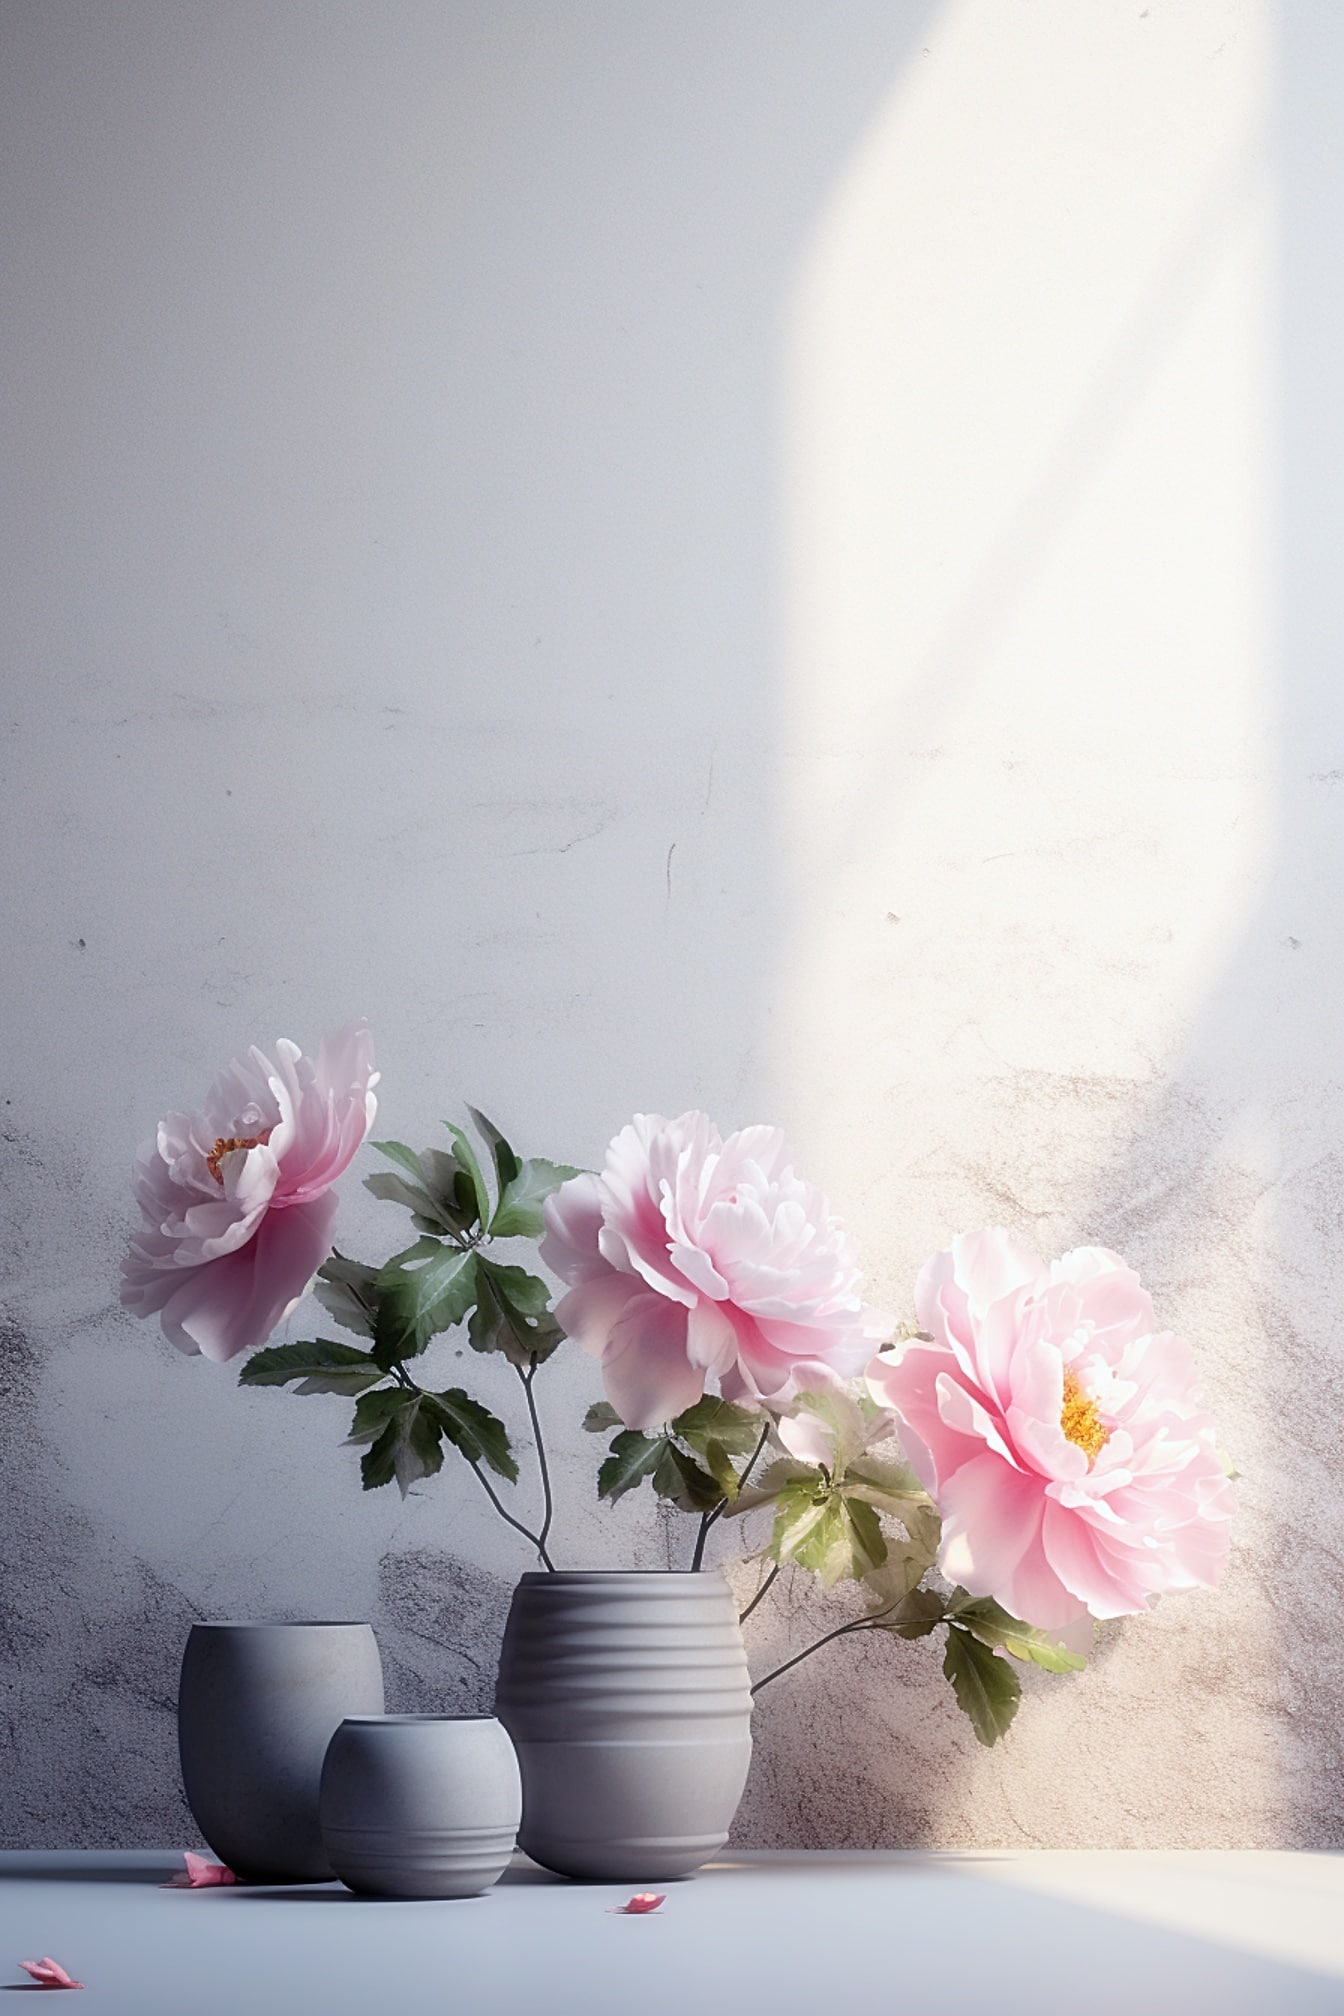 Ілюстрація сірої вази з квітами в ній